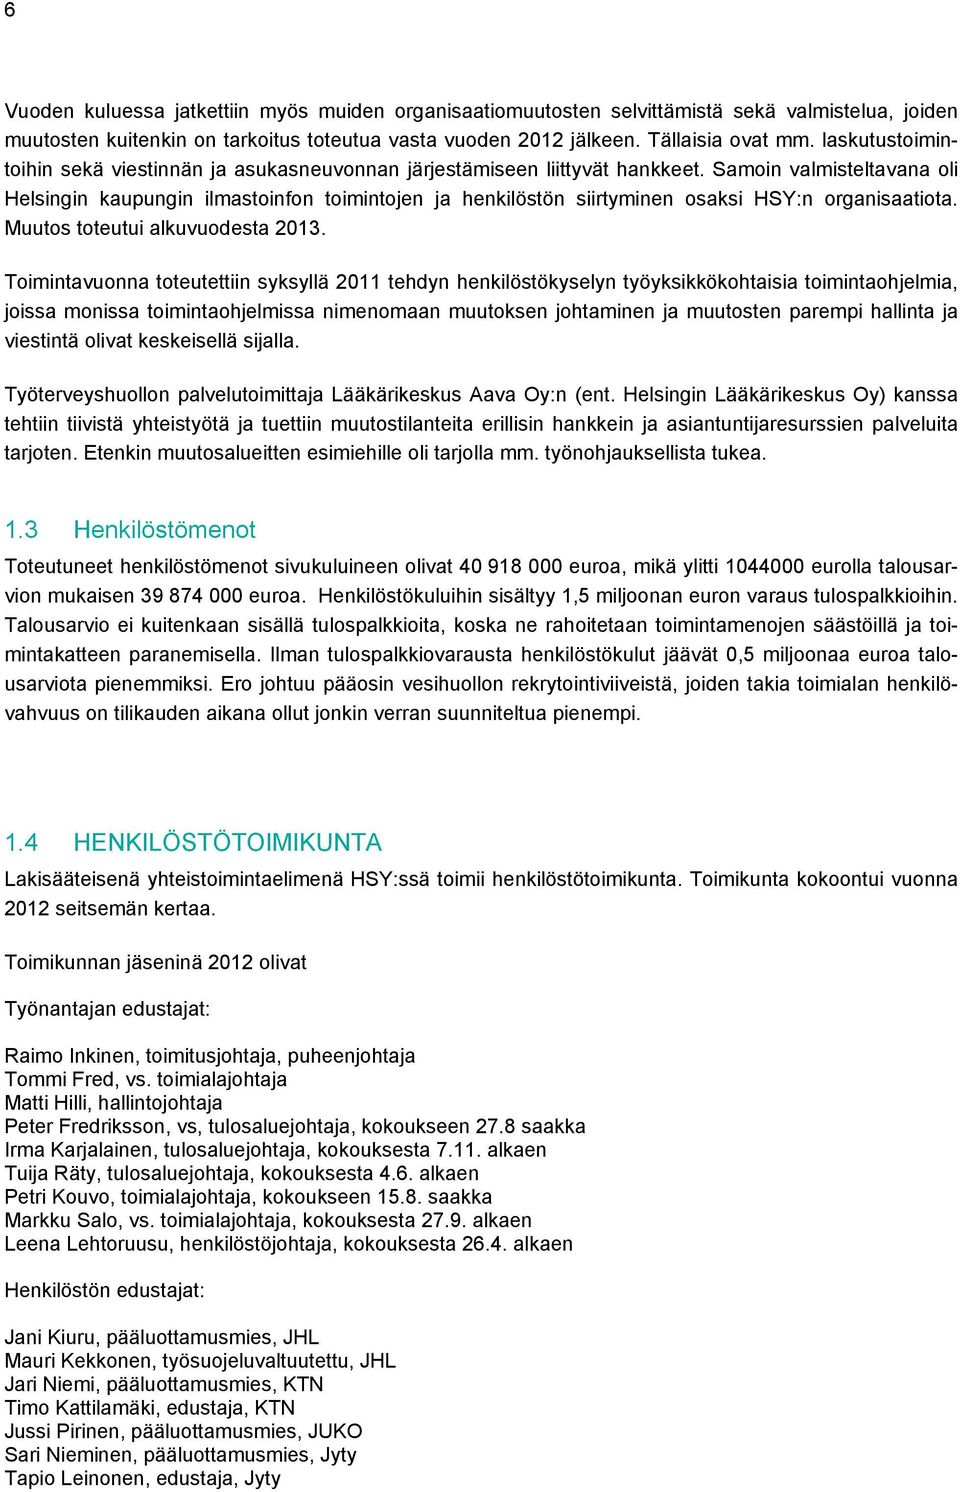 Samoin valmisteltavana oli Helsingin kaupungin ilmastoinfon toimintojen ja henkilöstön siirtyminen osaksi HSY:n organisaatiota. Muutos toteutui alkuvuodesta 2013.